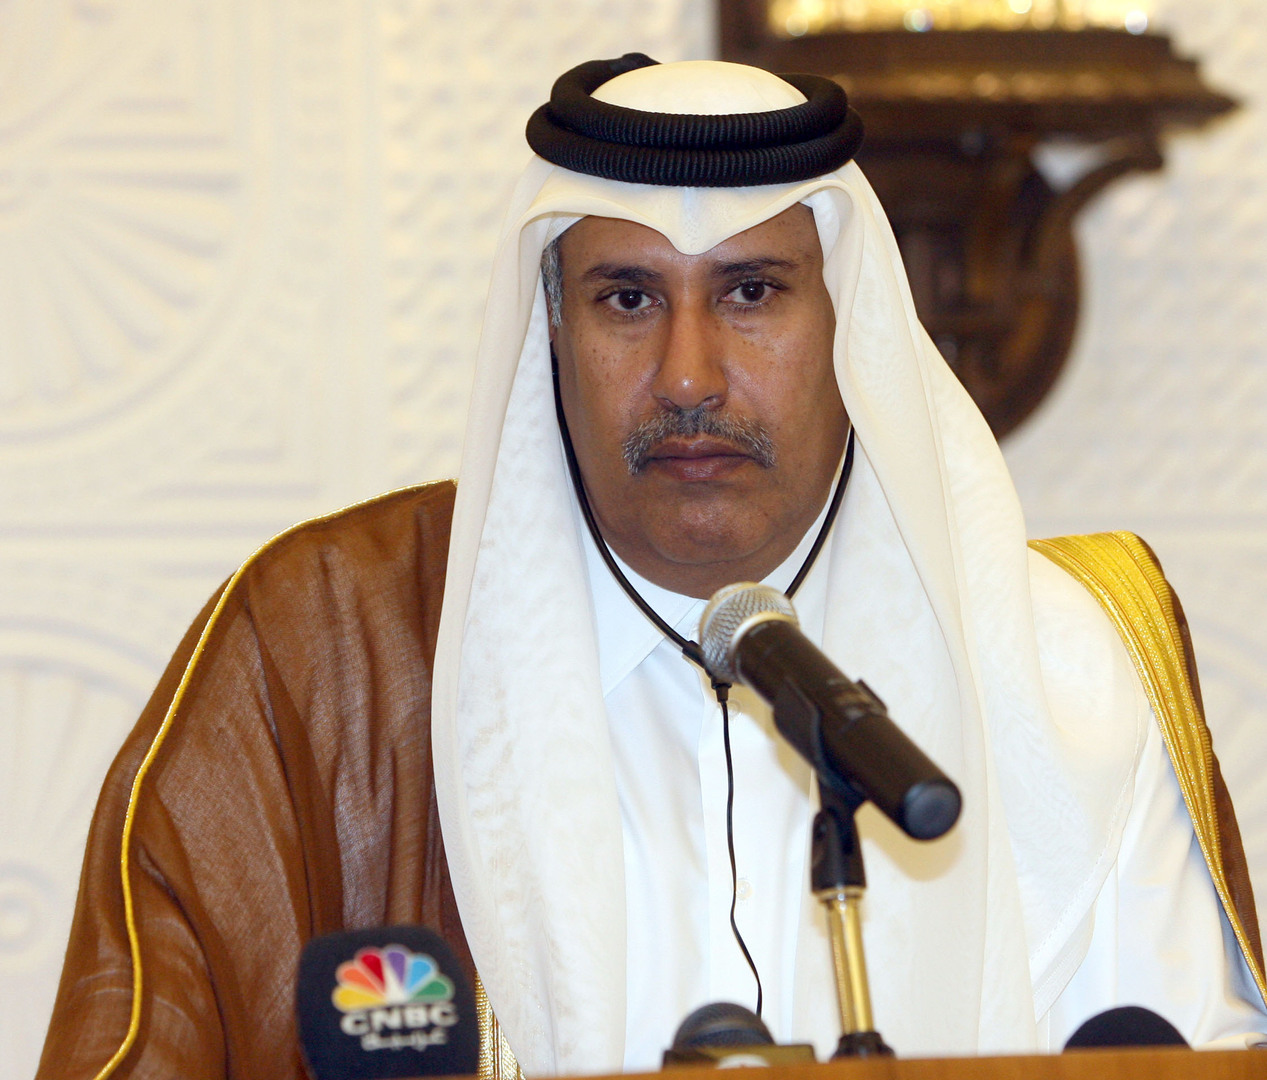 حمد بن جاسم يوجه رسالة إلى دول مجلس التعاون الخليجي على خلفية الأحداث الأخيرة في أوروبا